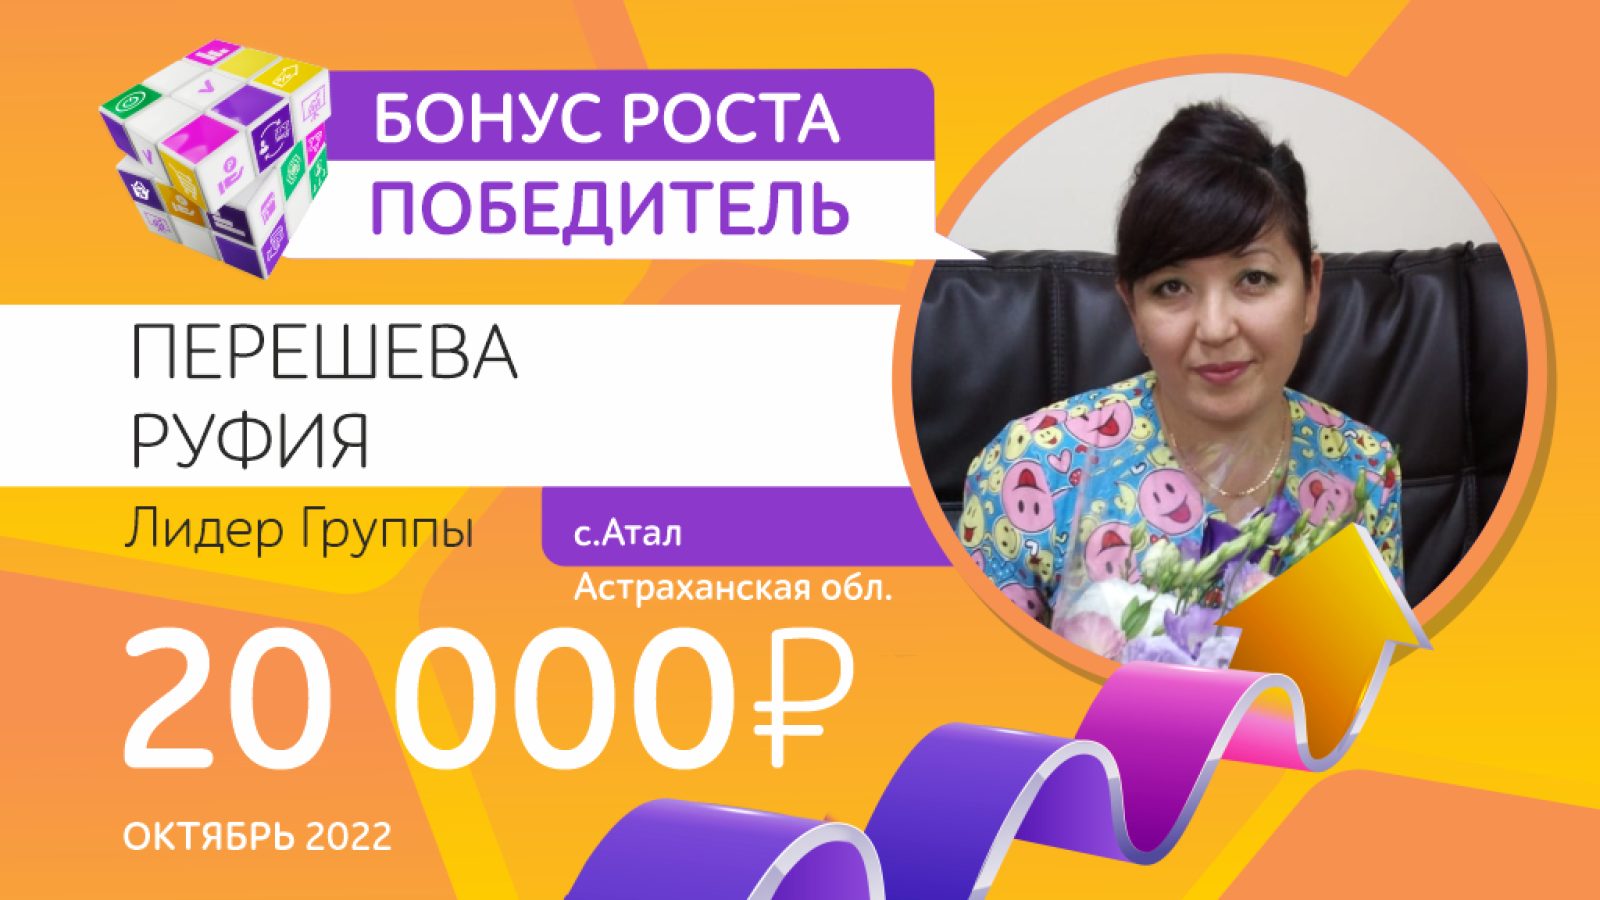 BN-20-000-PERESHEVA-Pobediteli_oktyabr-2022